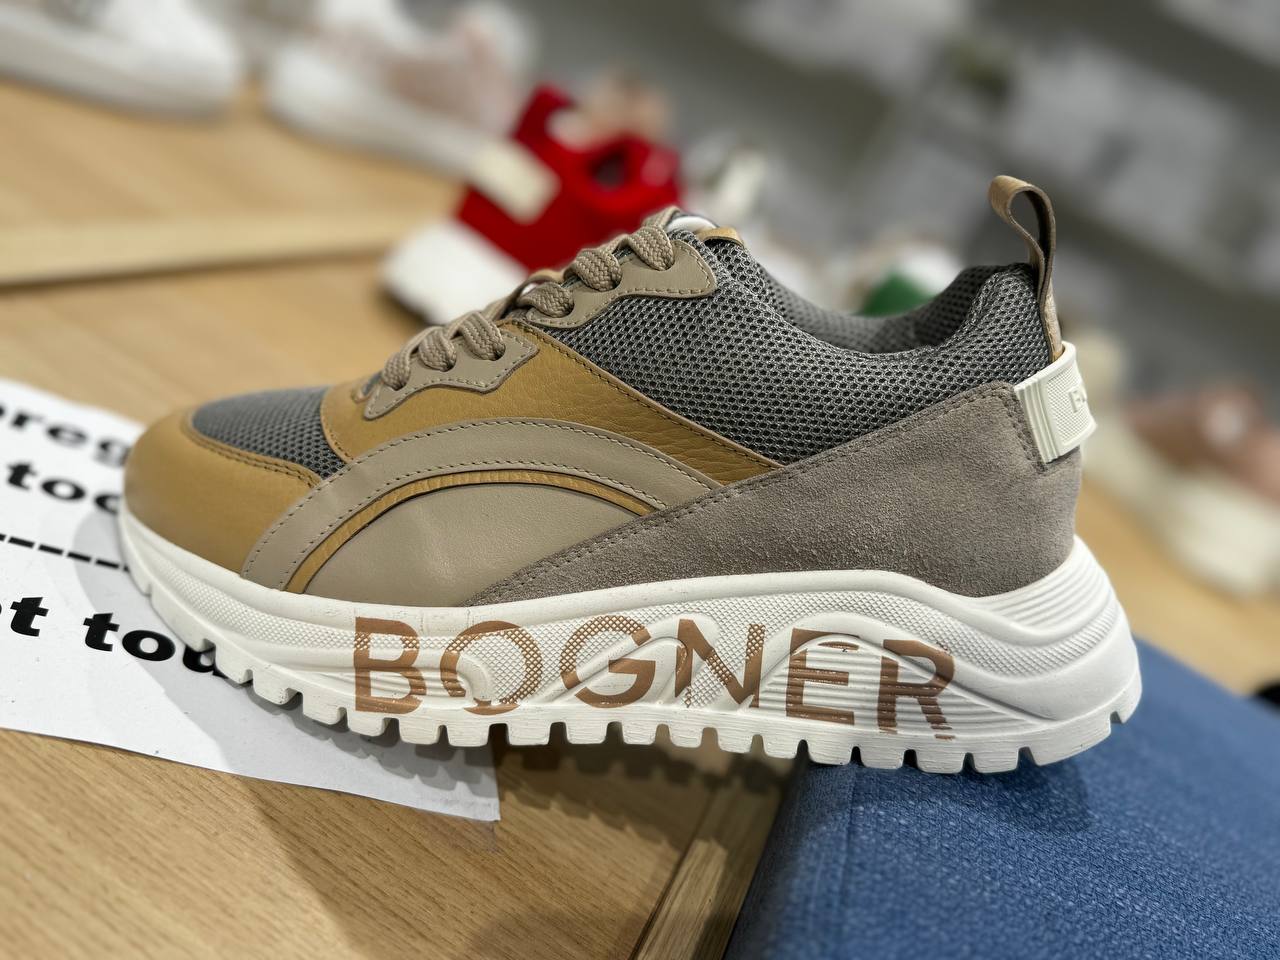 Bogner 9363